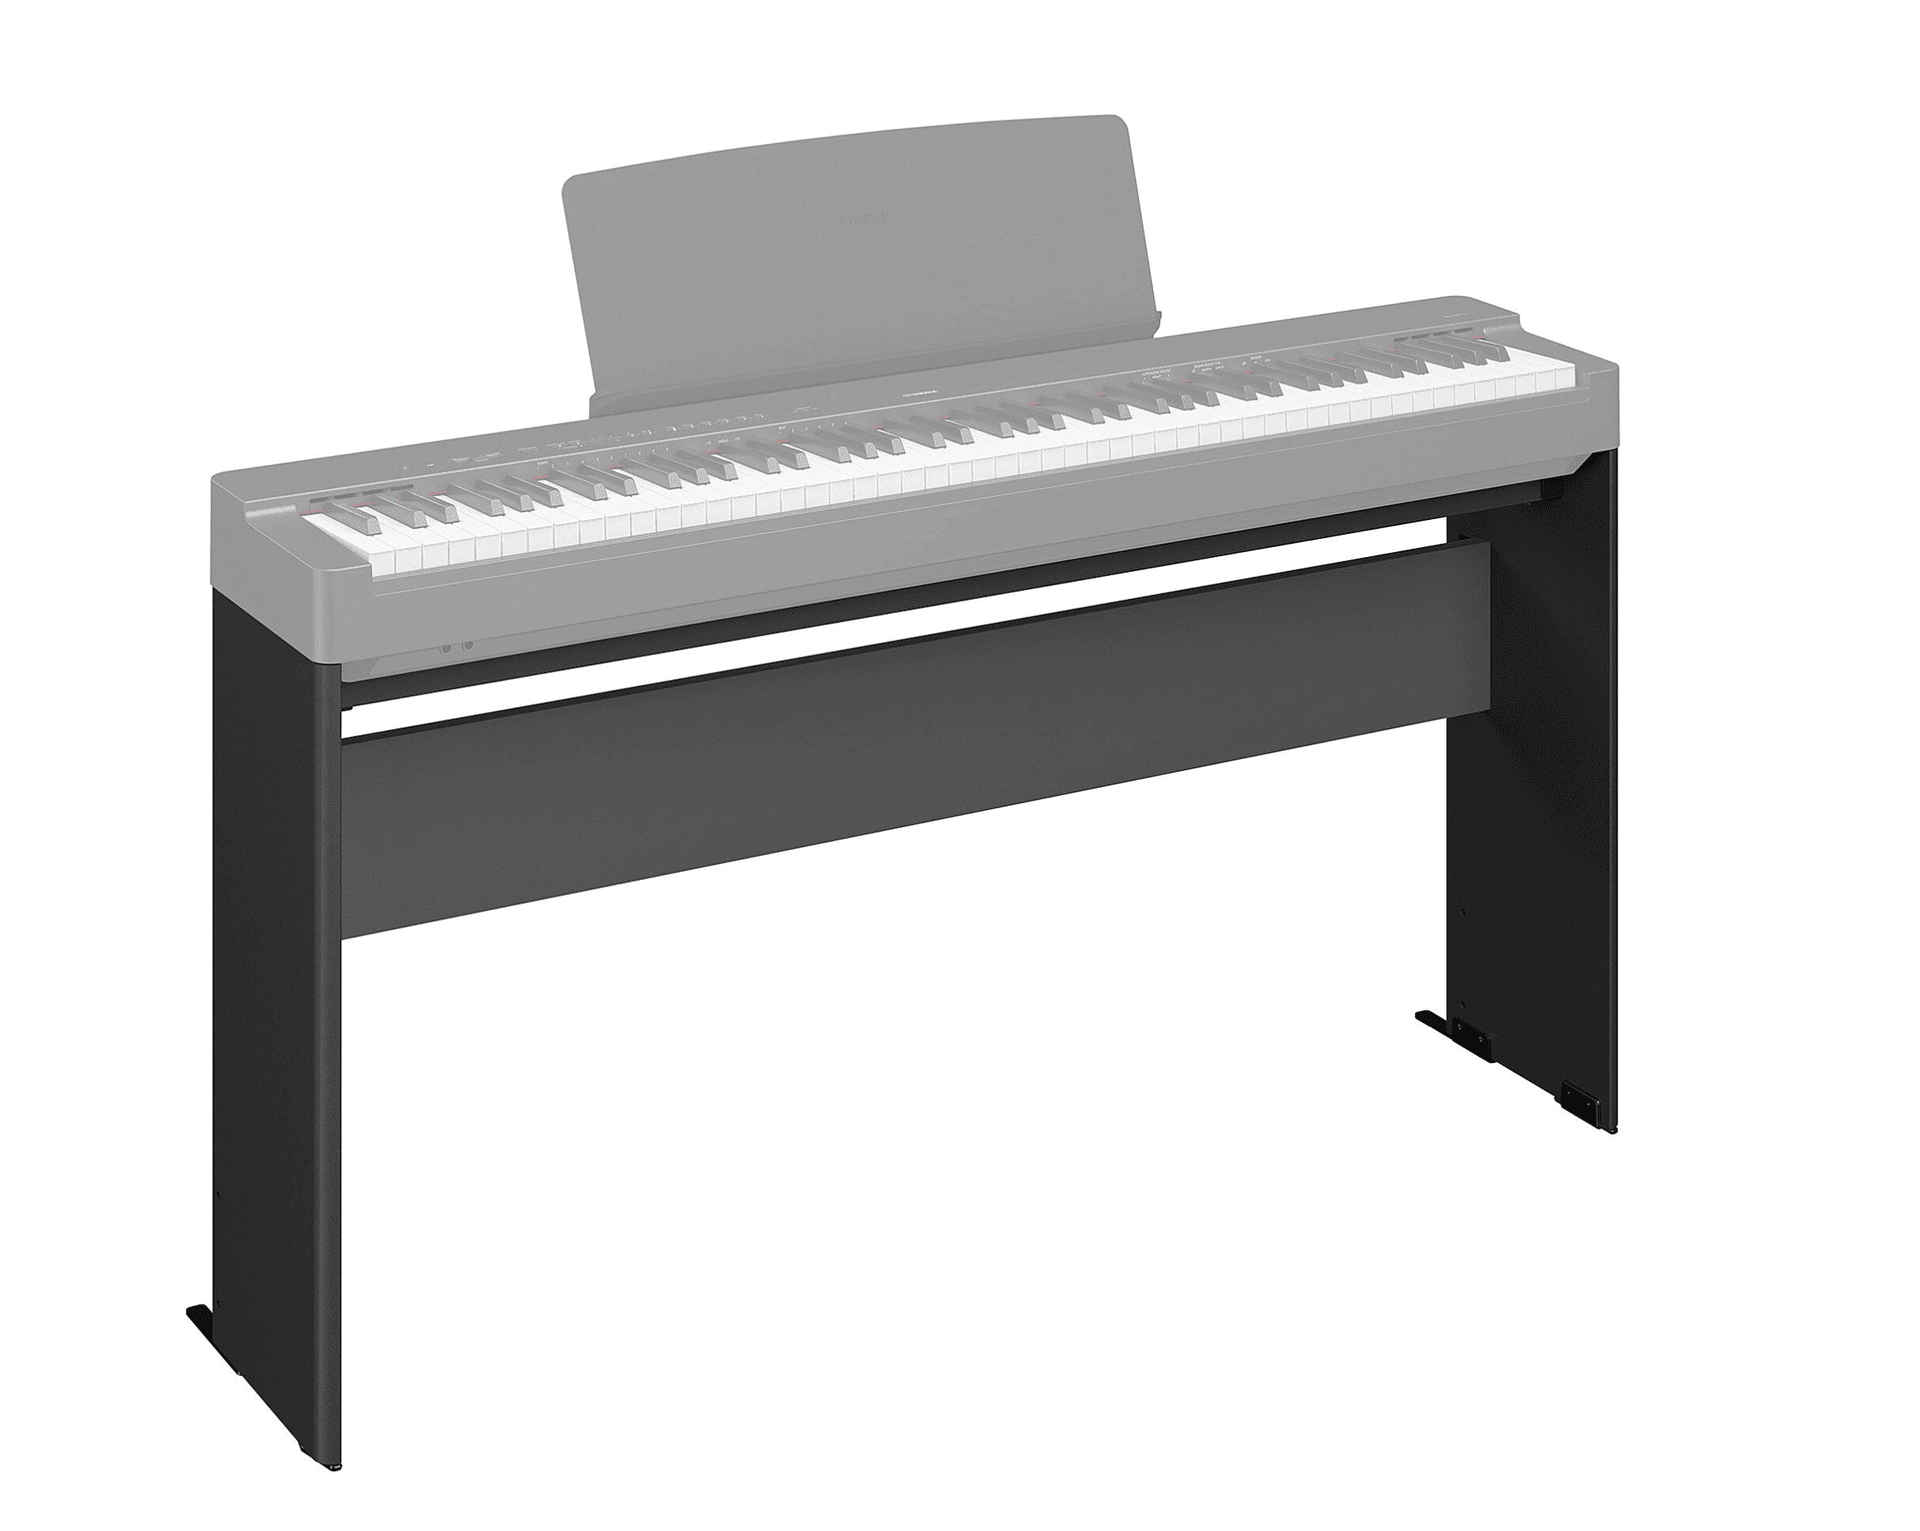 Piano numérique Yamaha : lequel choisir ? - Je suis pianiste